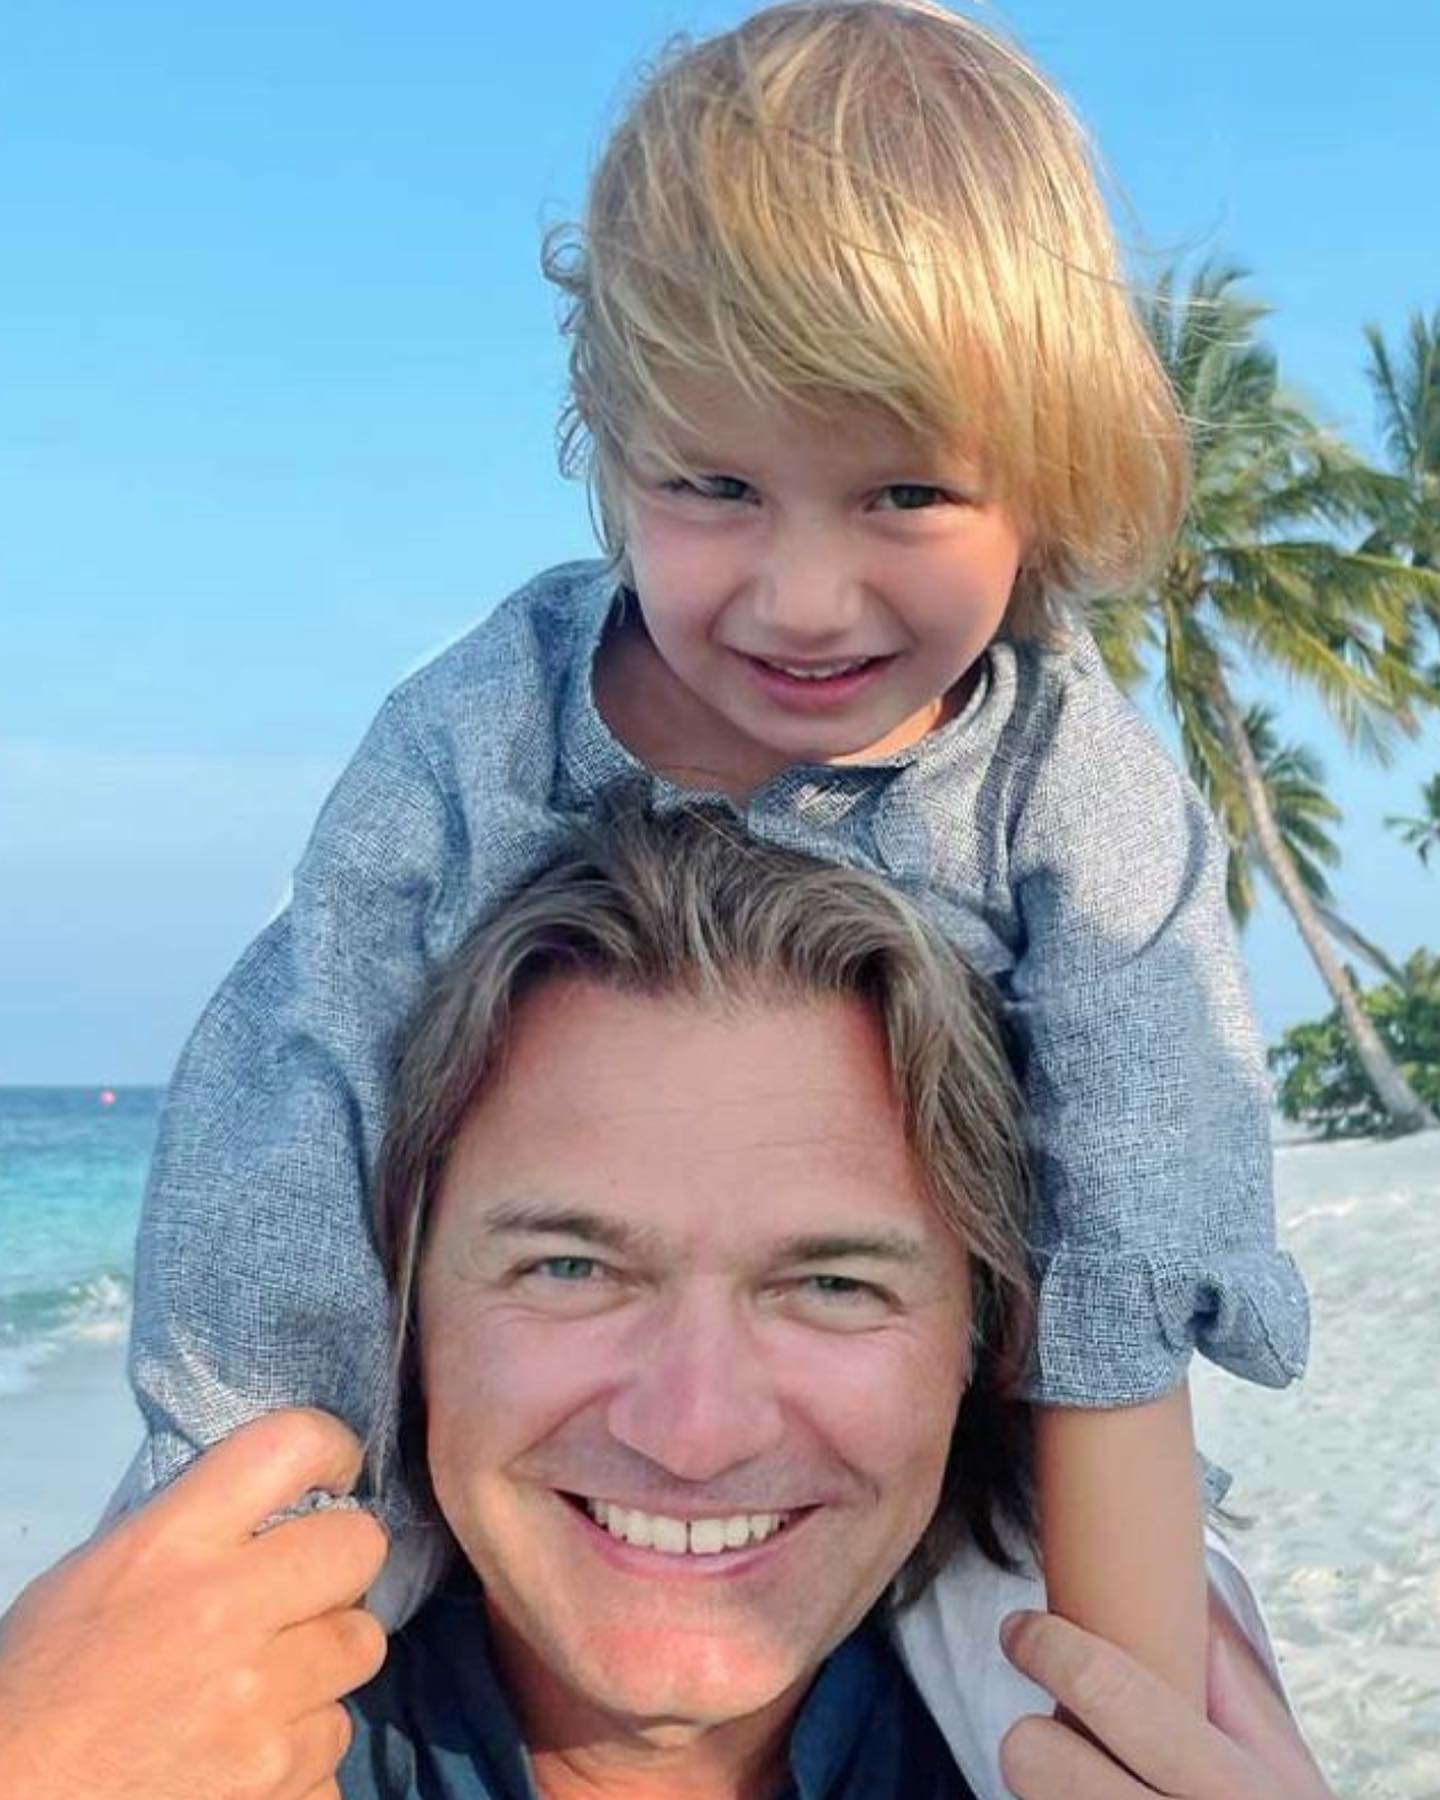 Дмитрий Маликов поделился снимком с сыном